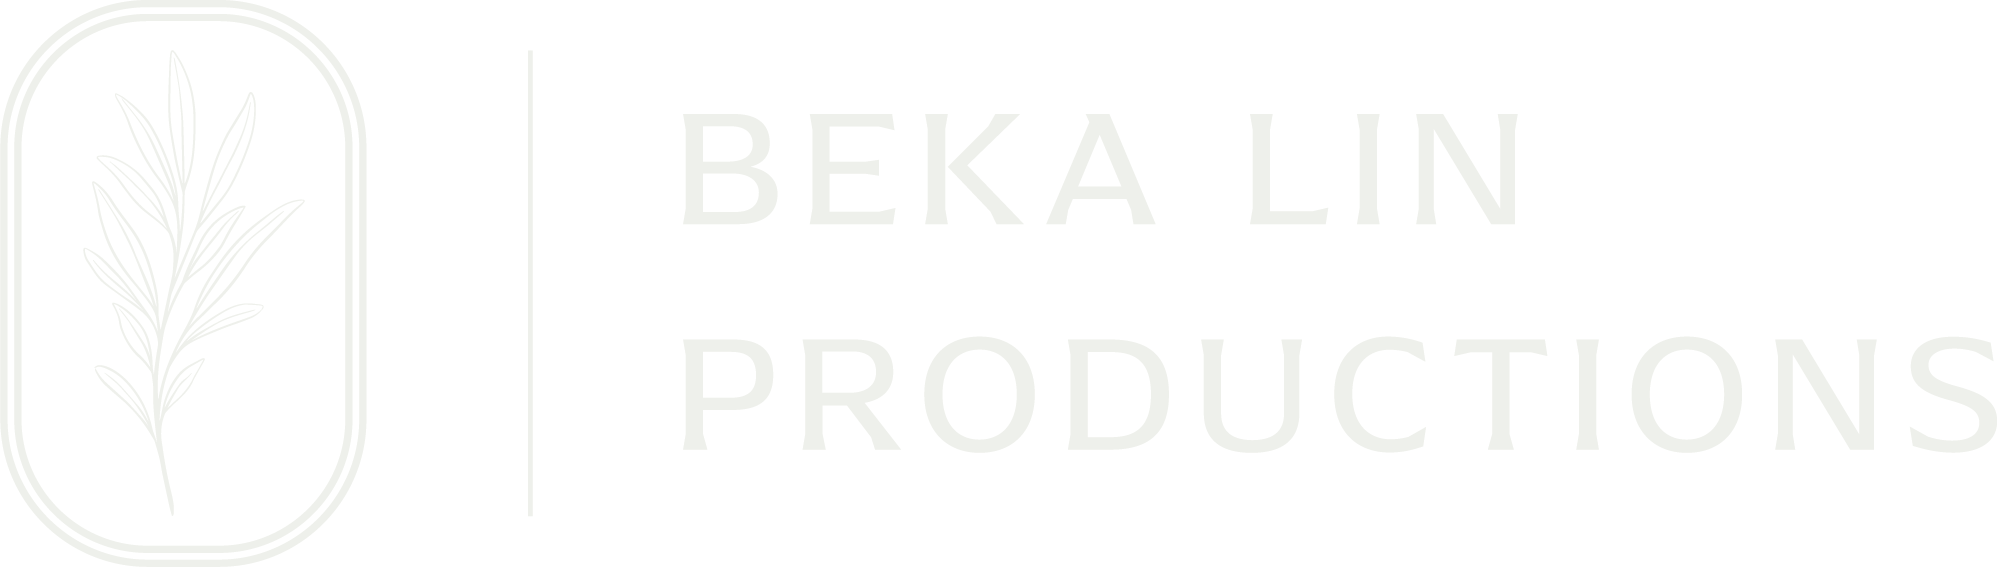 Beka-Lin Productions